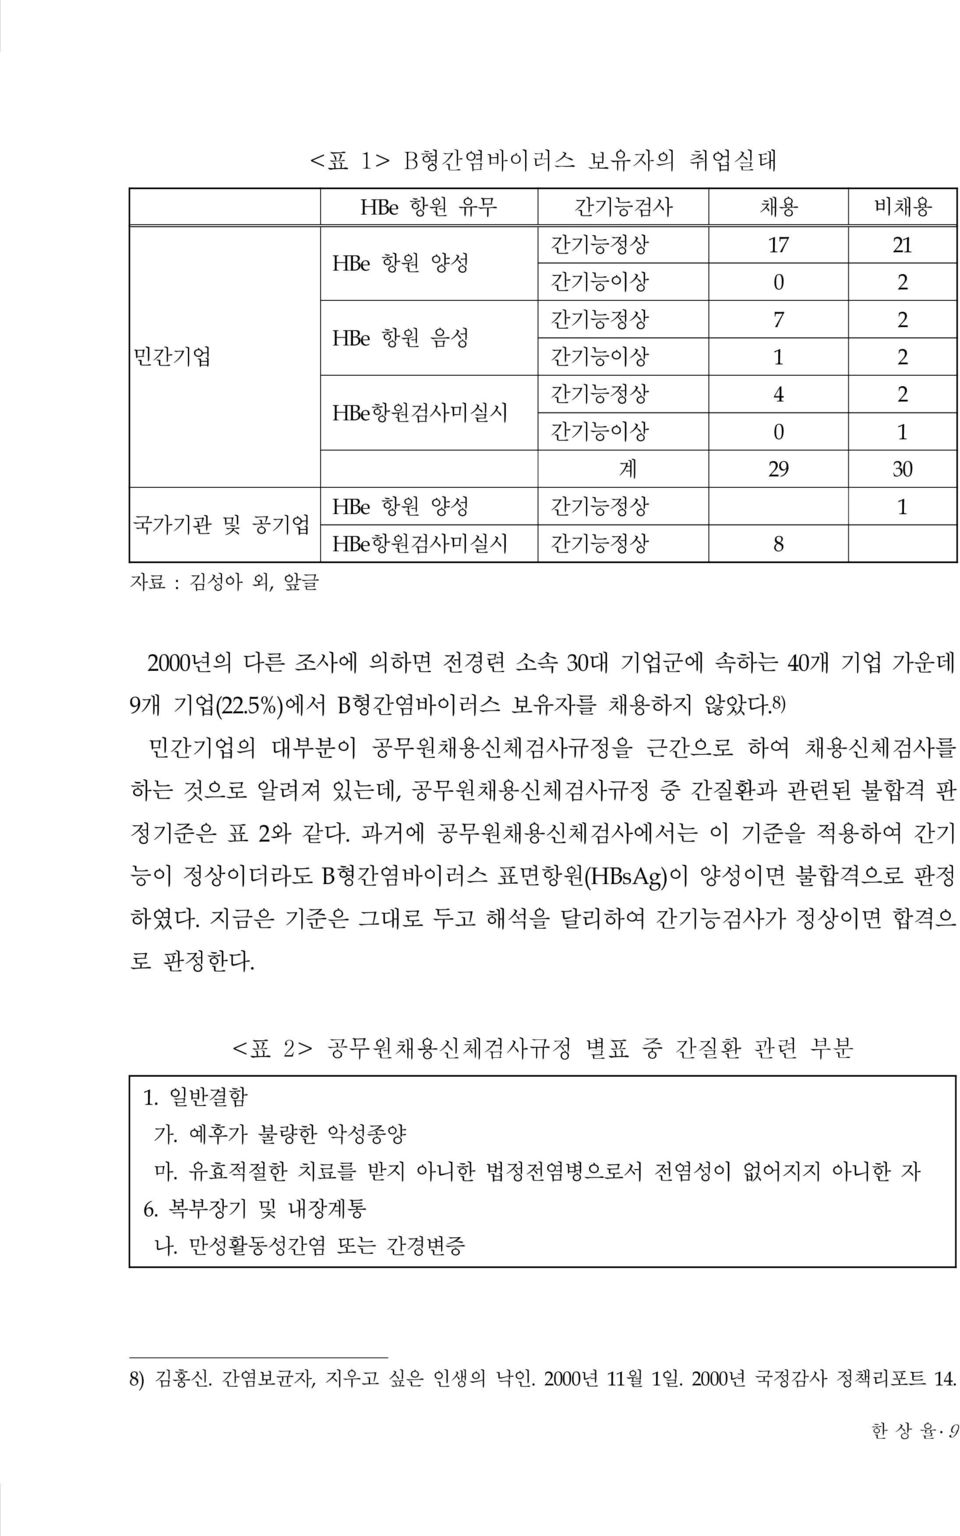 공무원채용신체검사규정 별표 중